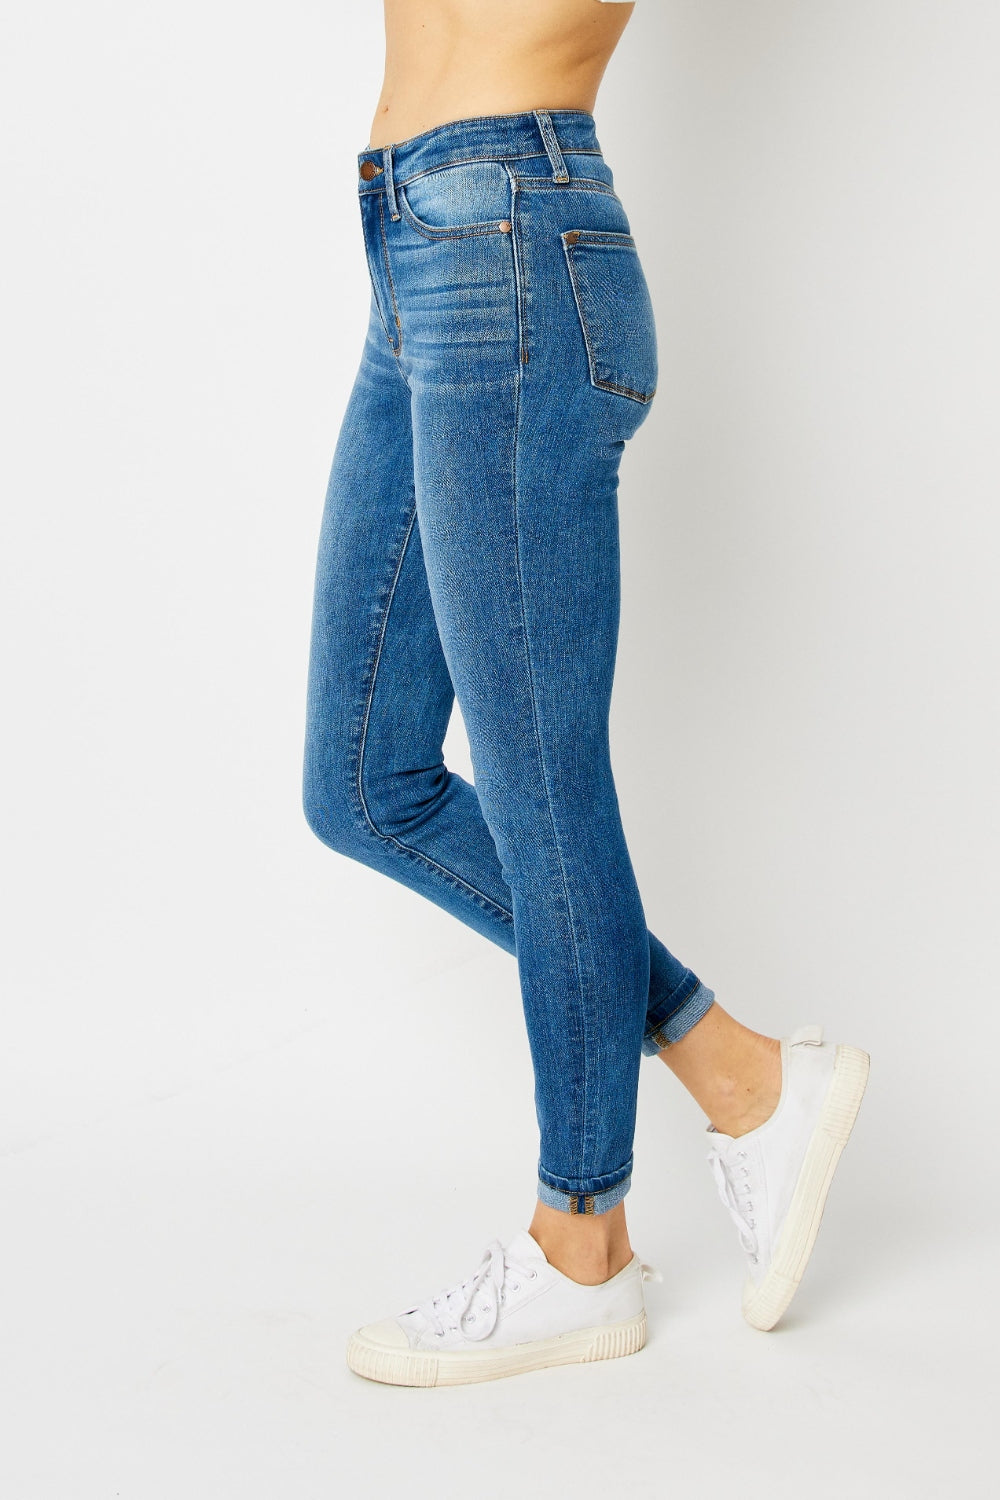 Judy Blue Medium Wash Cuffed Hem Skinny Jeans Trendsi